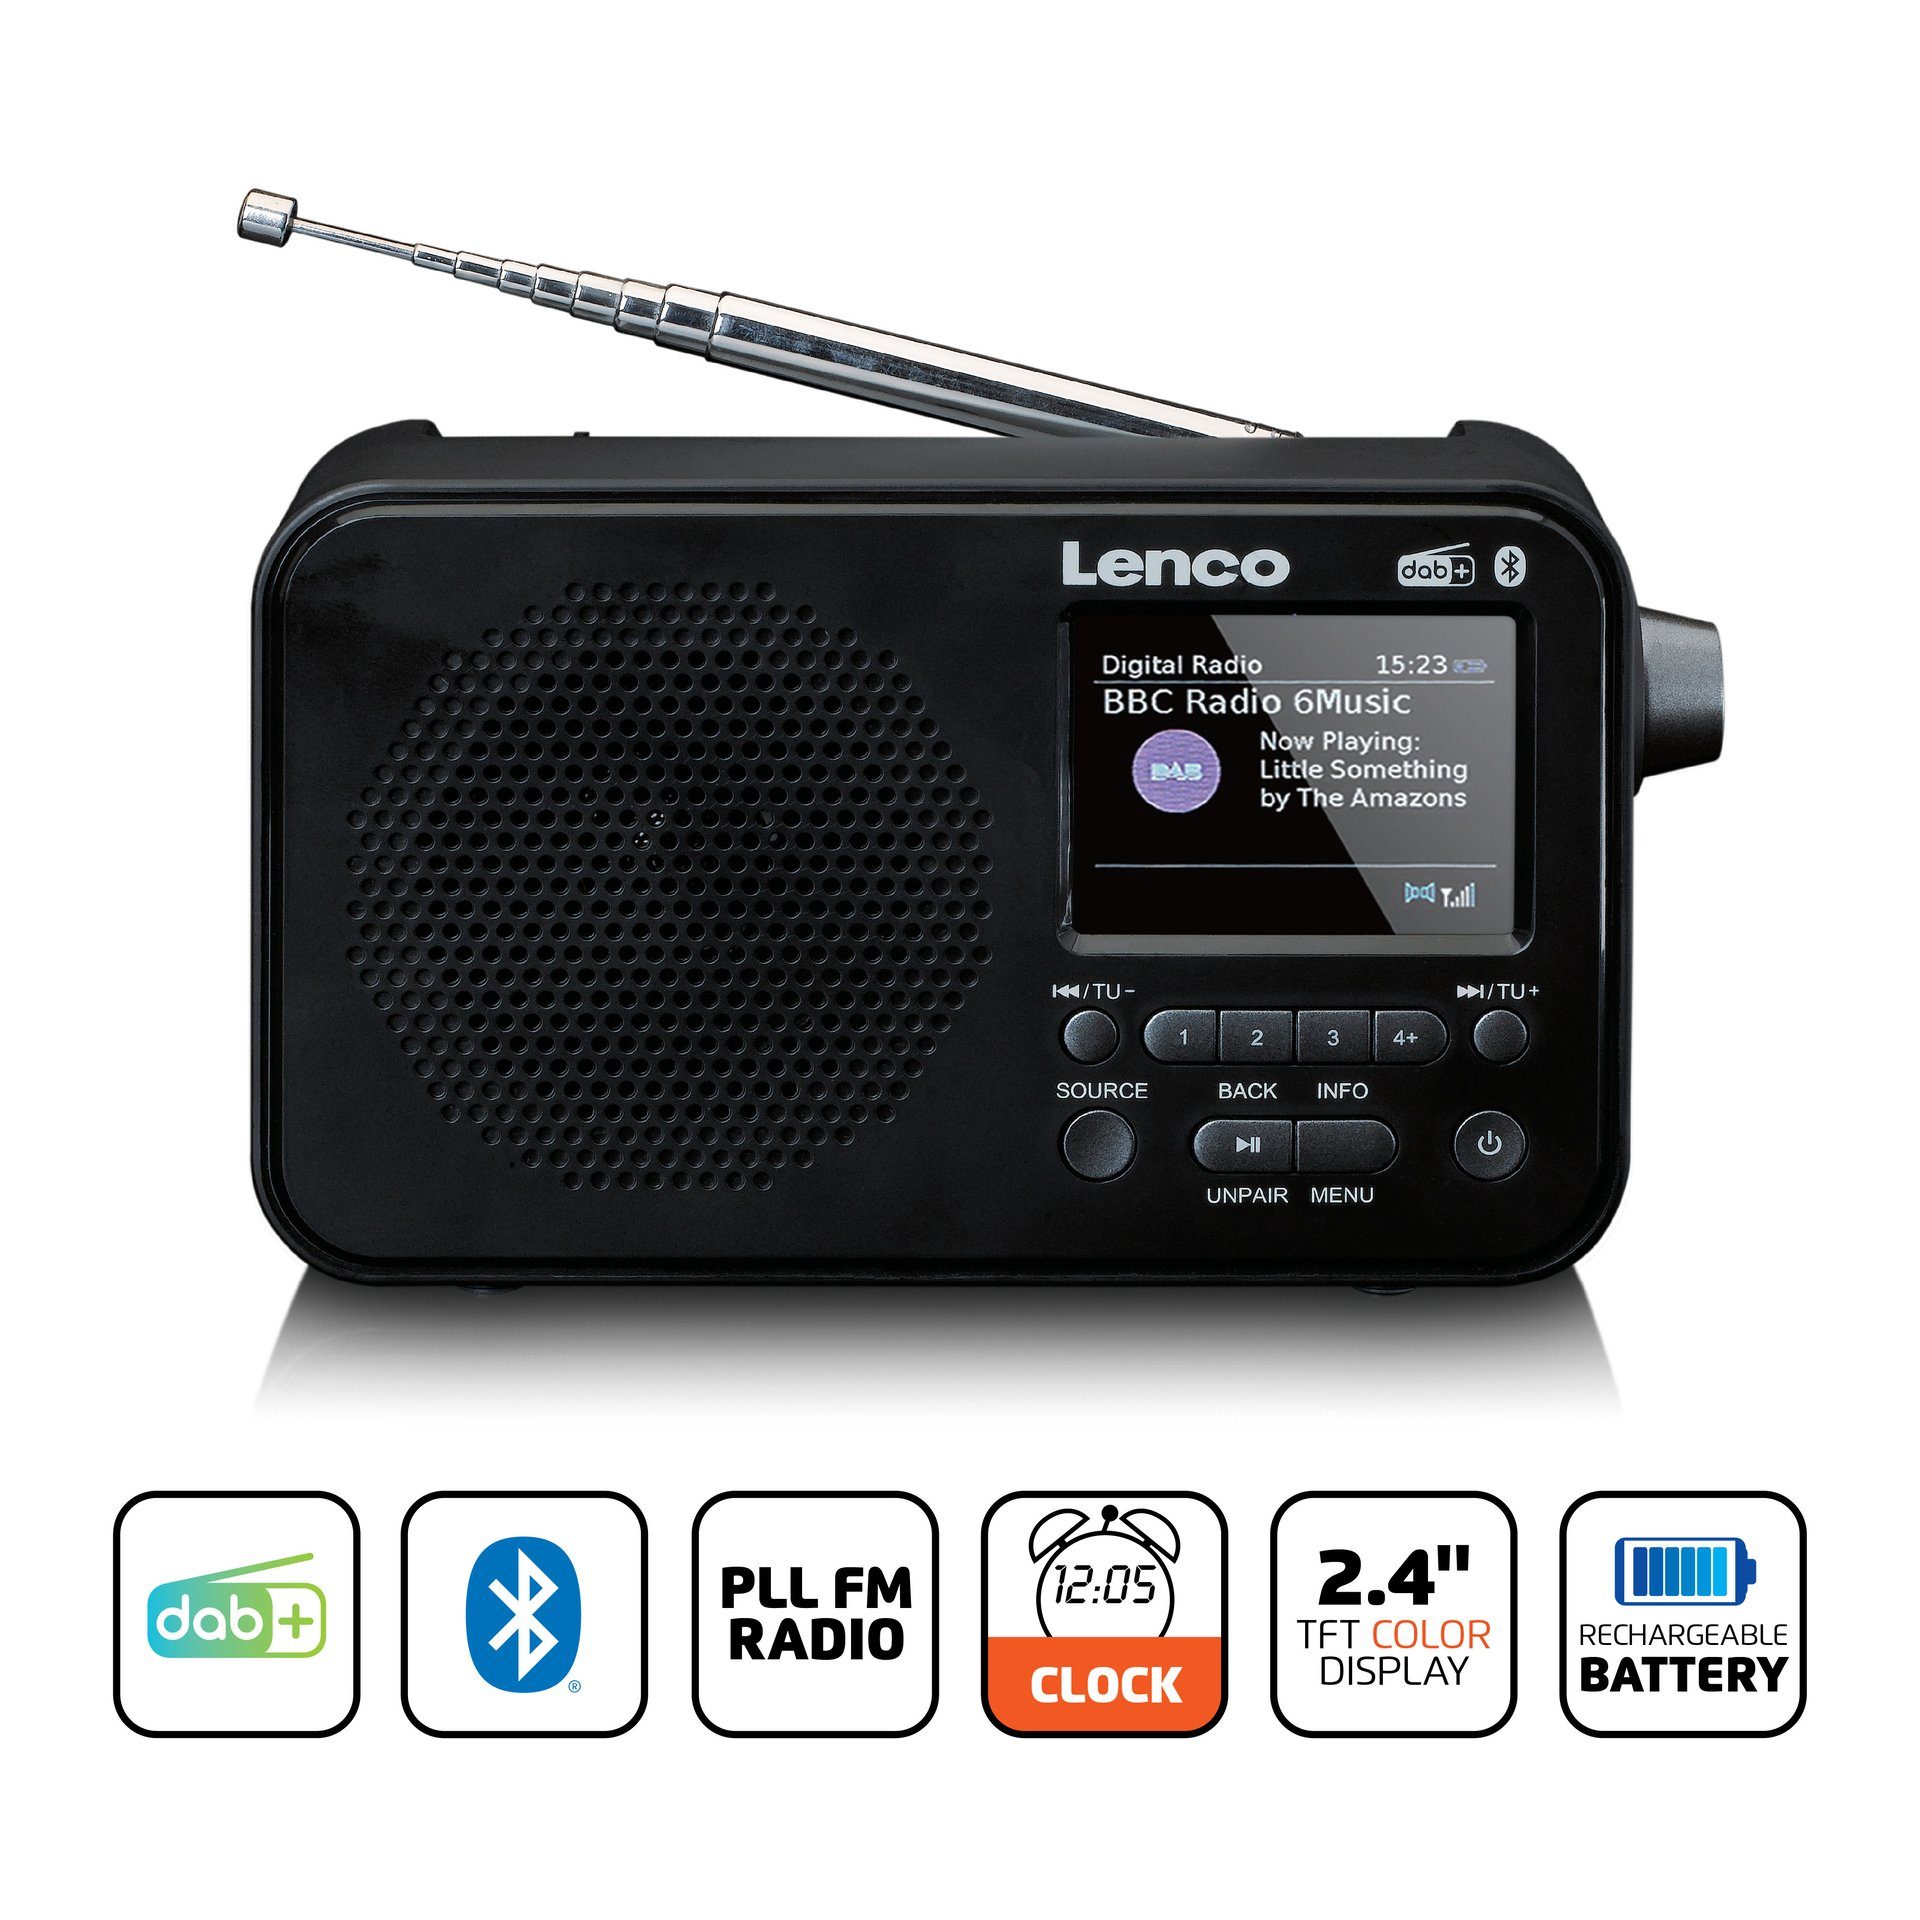 PDR-036BK (Digitalradio Lenco (DAB) Digitalradio DAB+/FM-Radio (DAB) - Schwarz-Grau